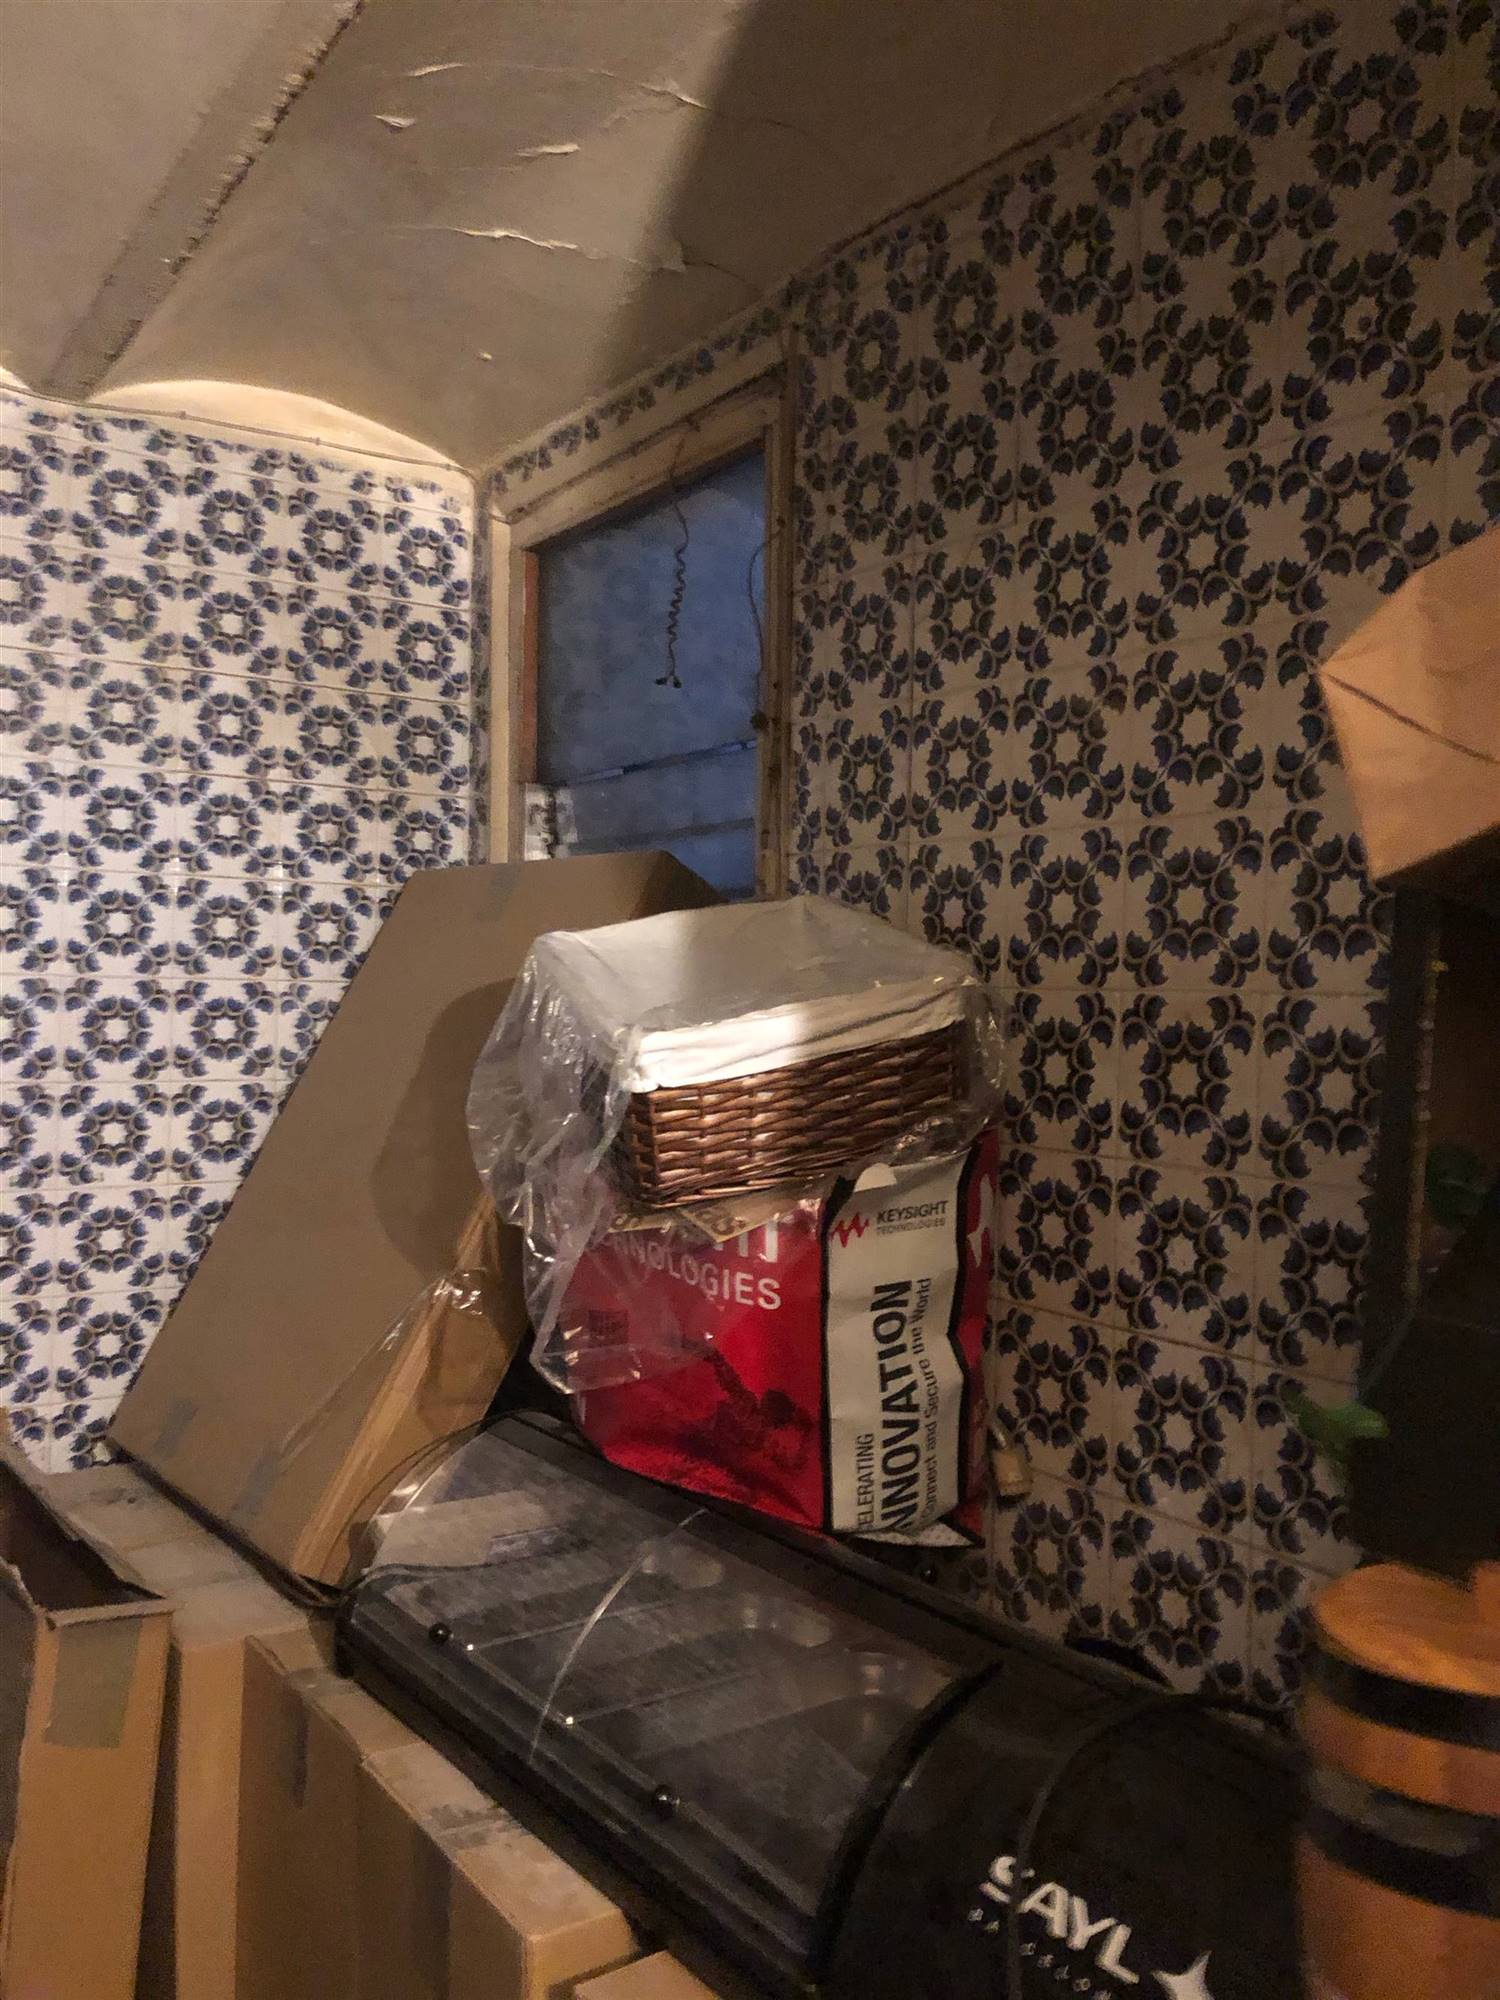 Un dormitorio con baldosines anticuados y un pequeño ventanal desaprovechado.